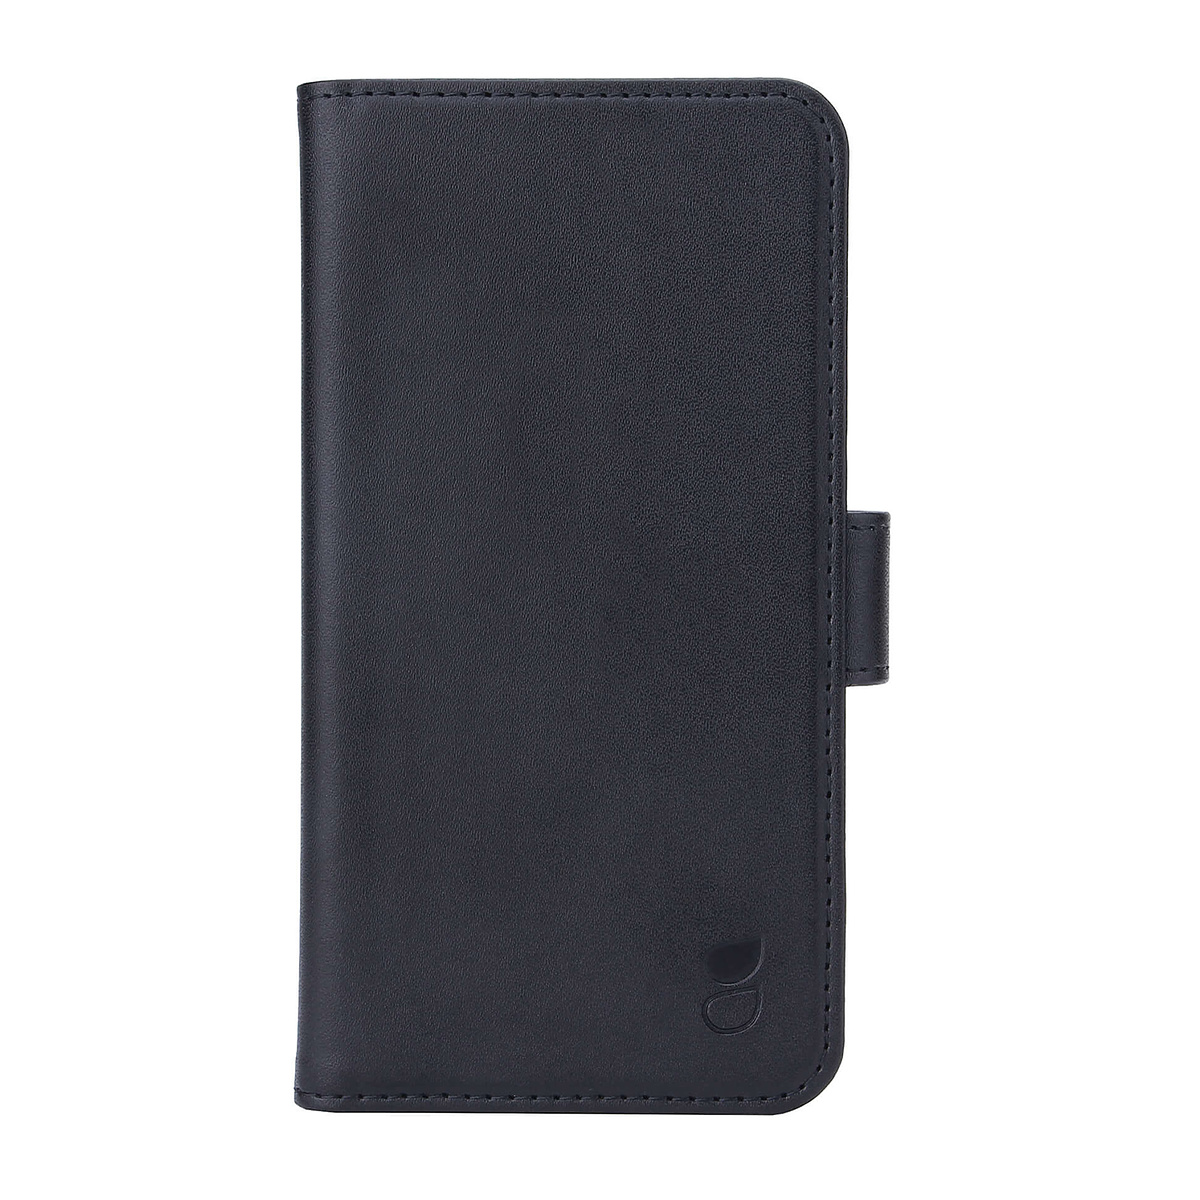 Gear plånboksväska, iPhone 11, svart